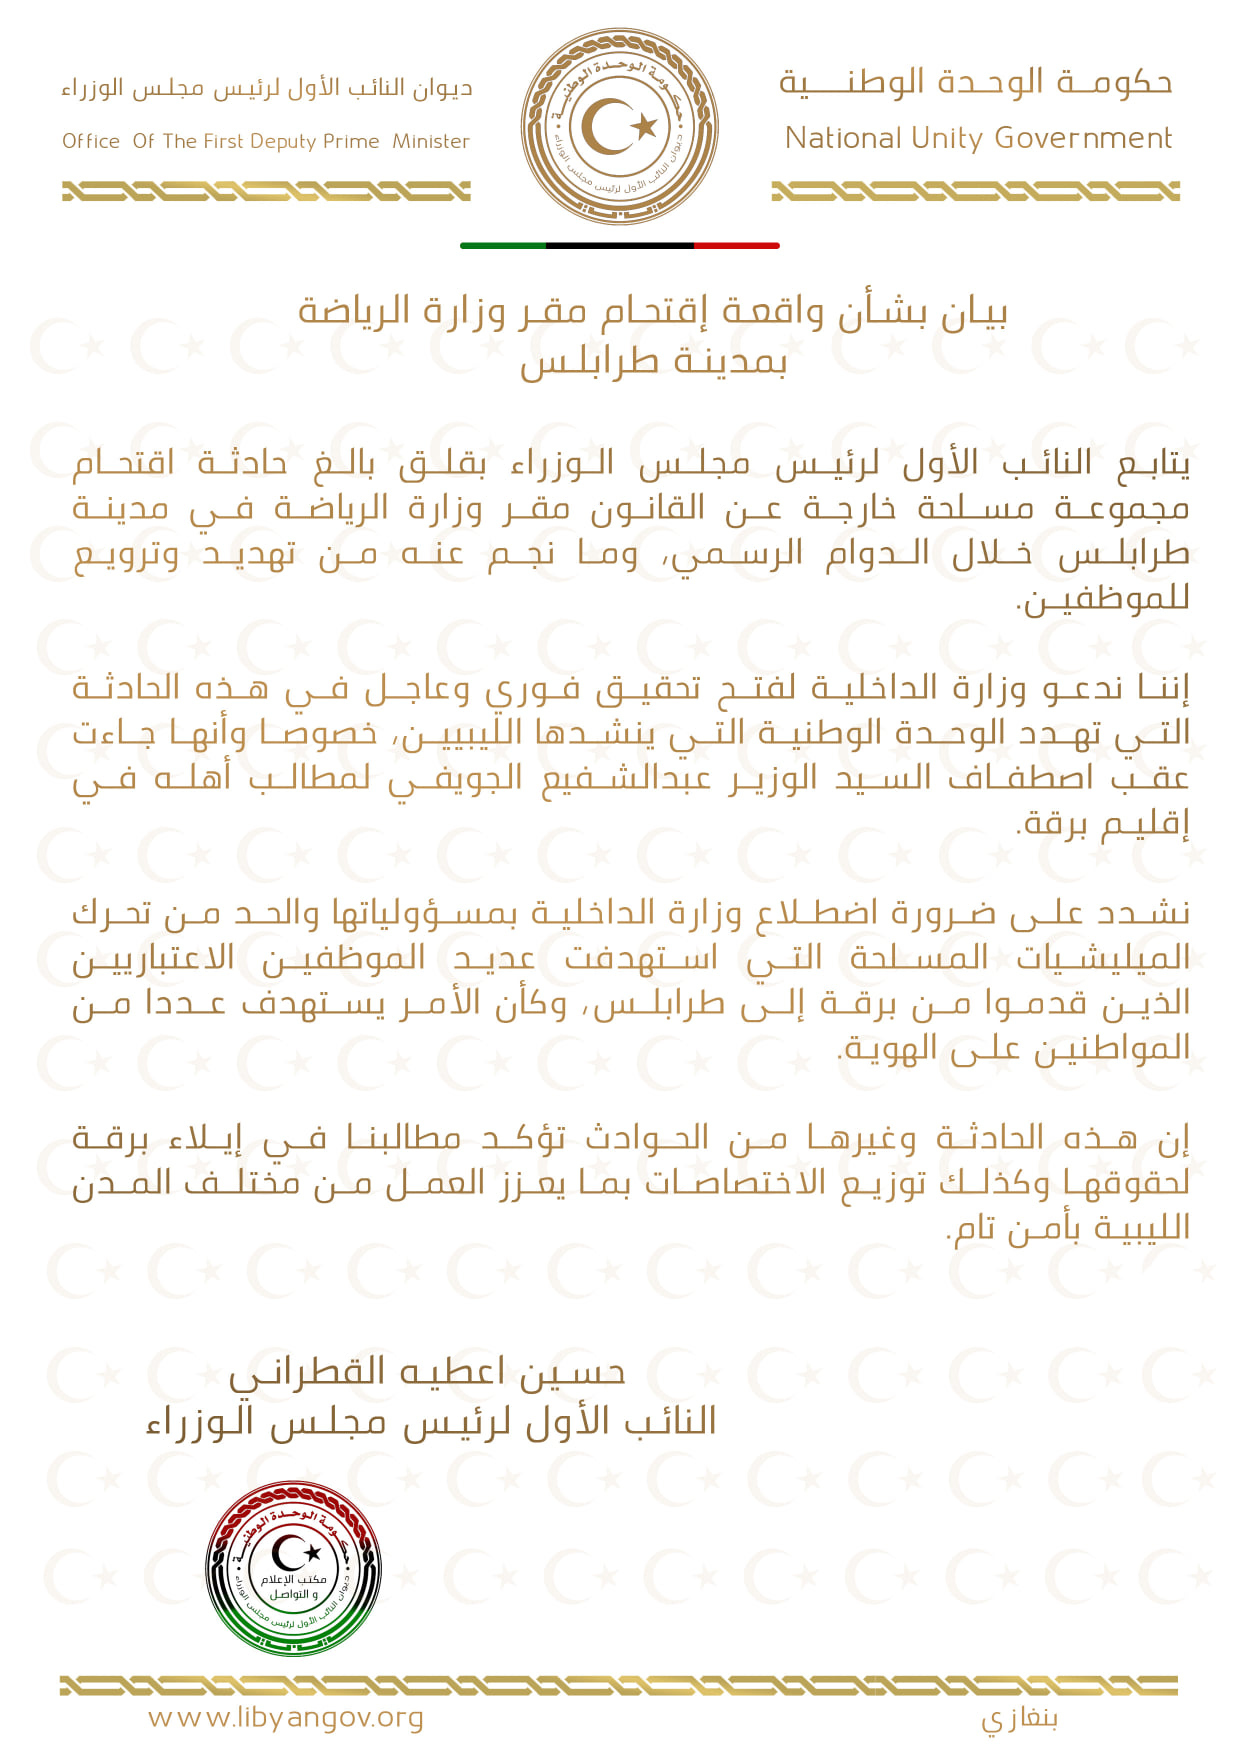 النائب الأول علي القطراني يُطالب بفتح تحقيق في حادثة اقتحام مقر وزارة الرياضة بطرابلس